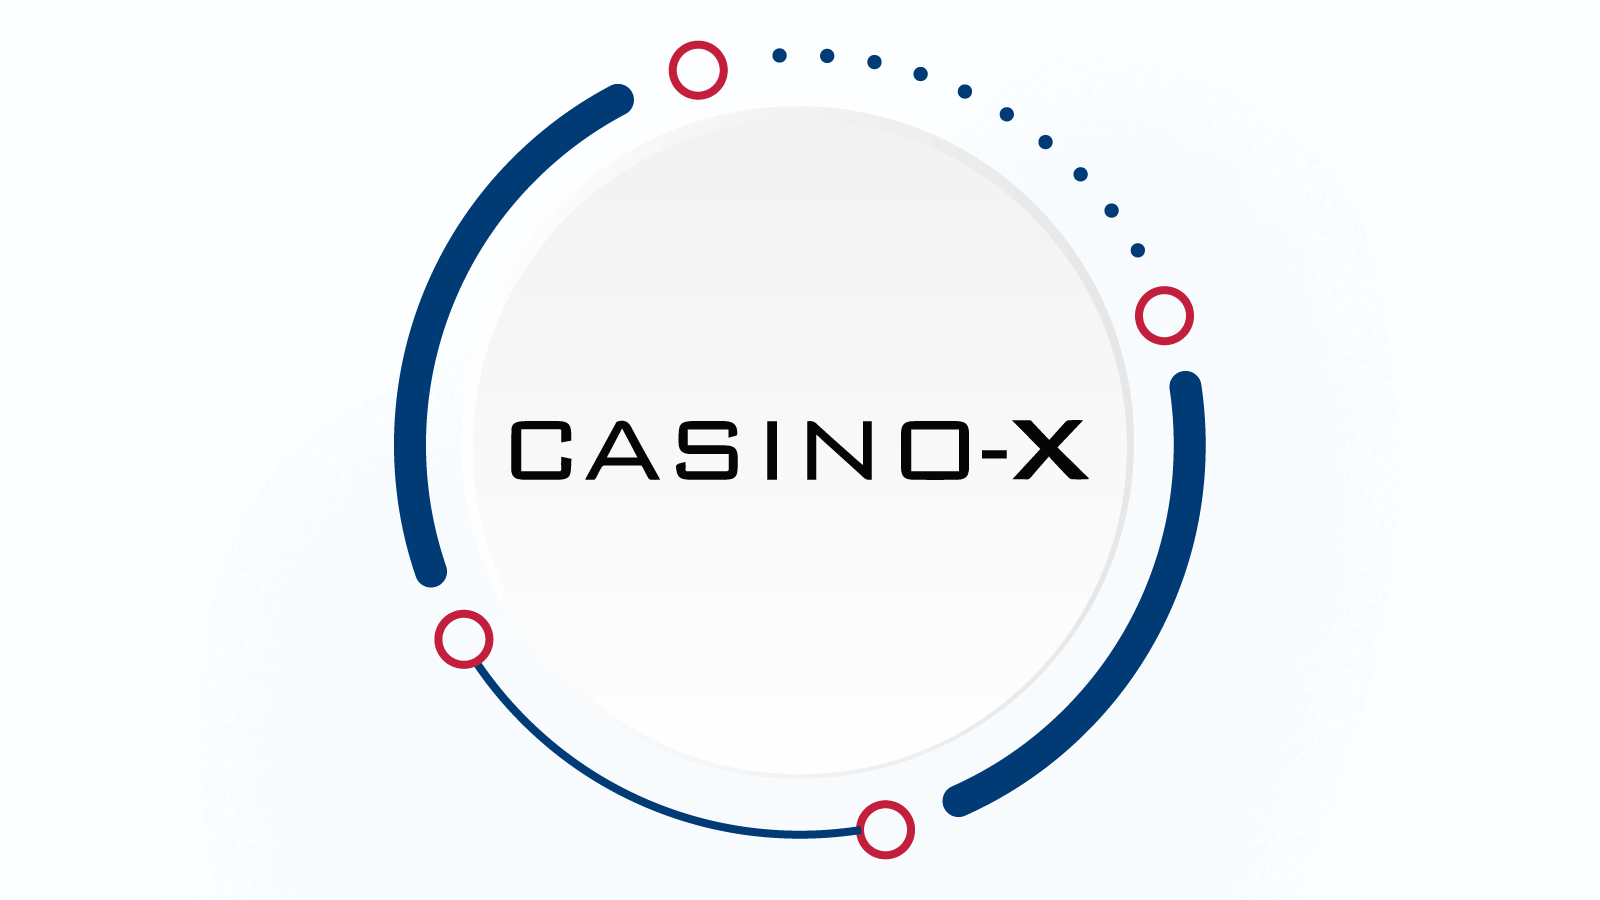 #2 – Casino X